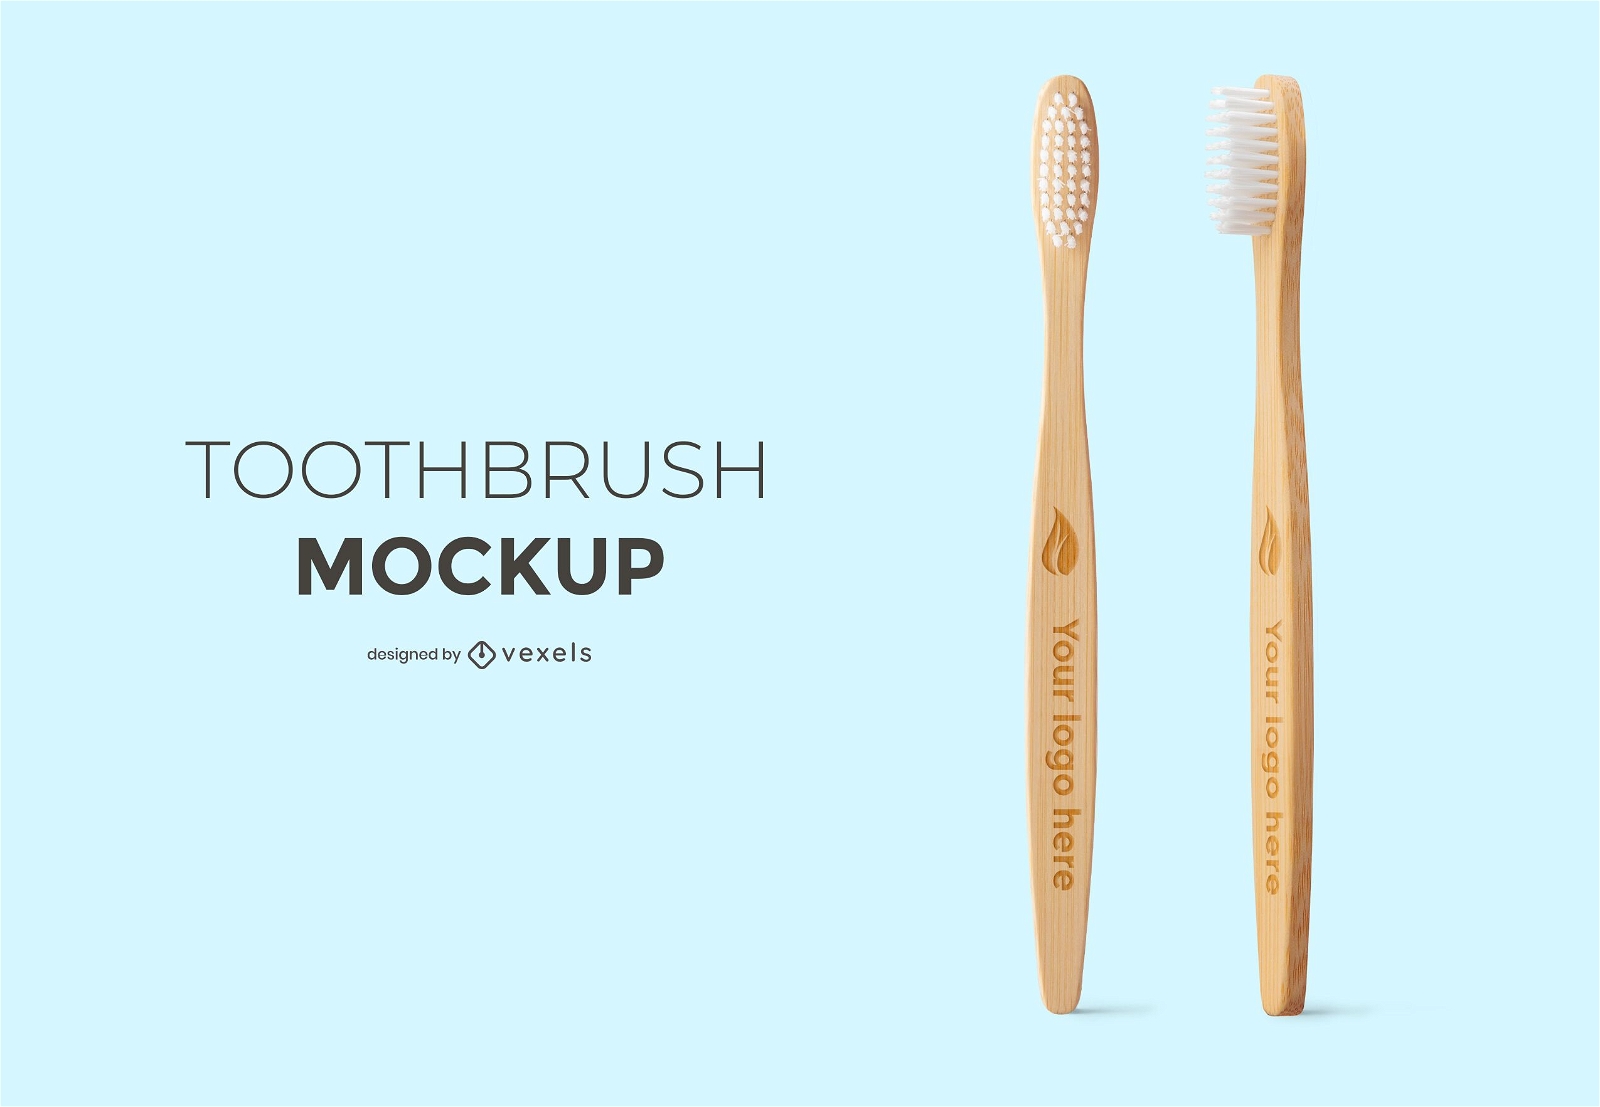 Toothbrush set mockup design